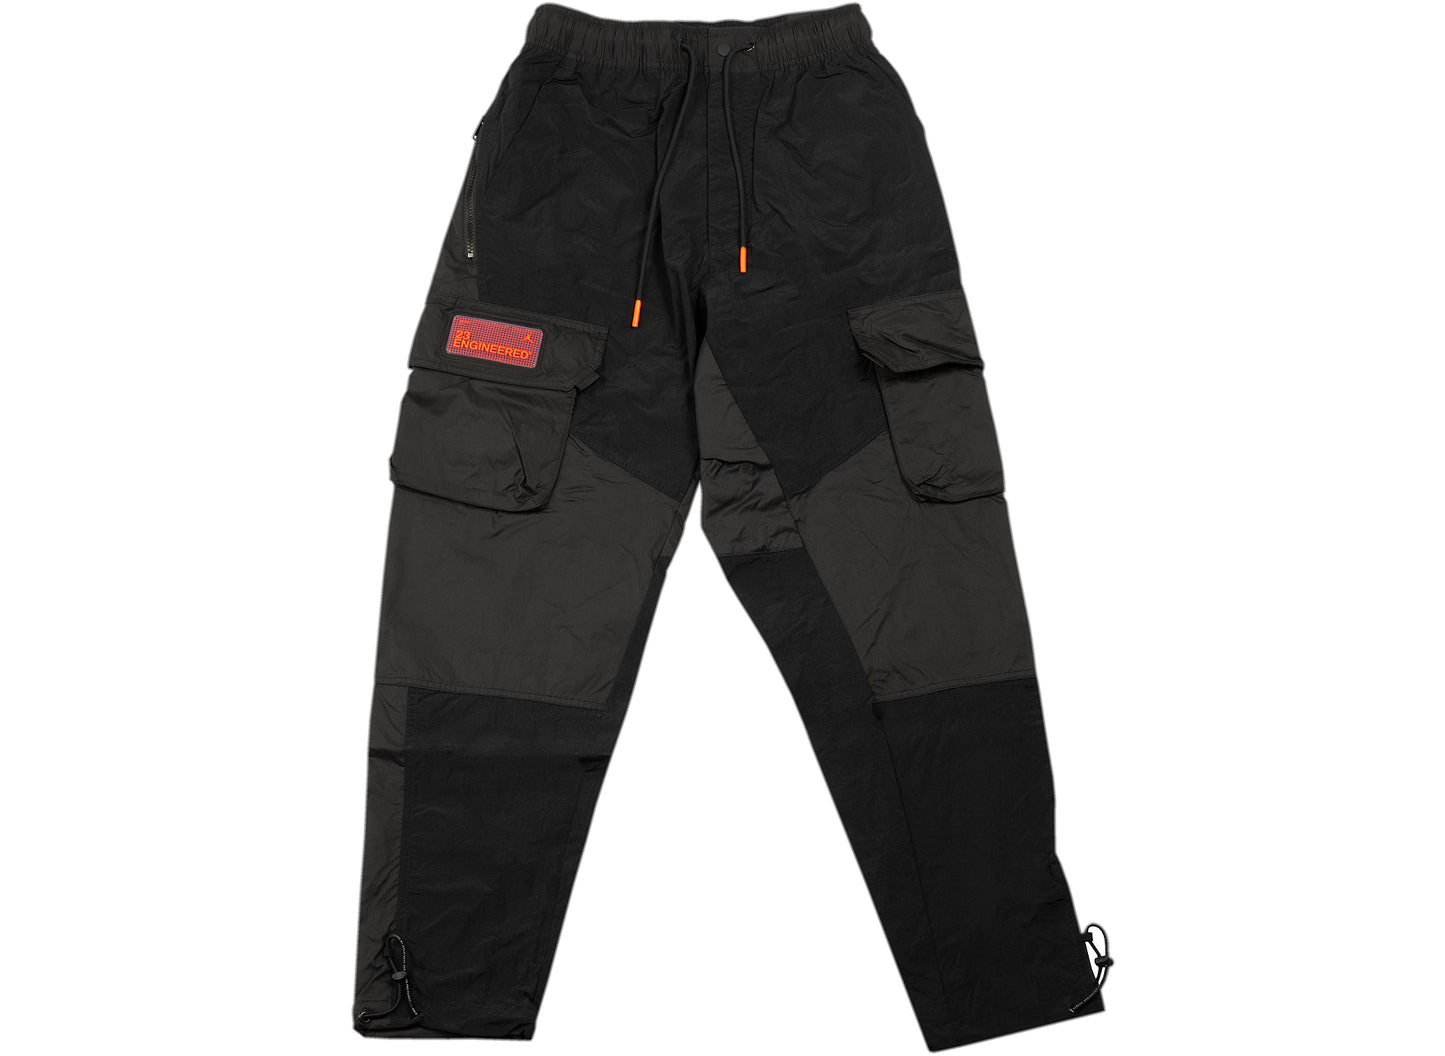 Jordan Essentials Men's Cargo Pants Black DQ7342-010